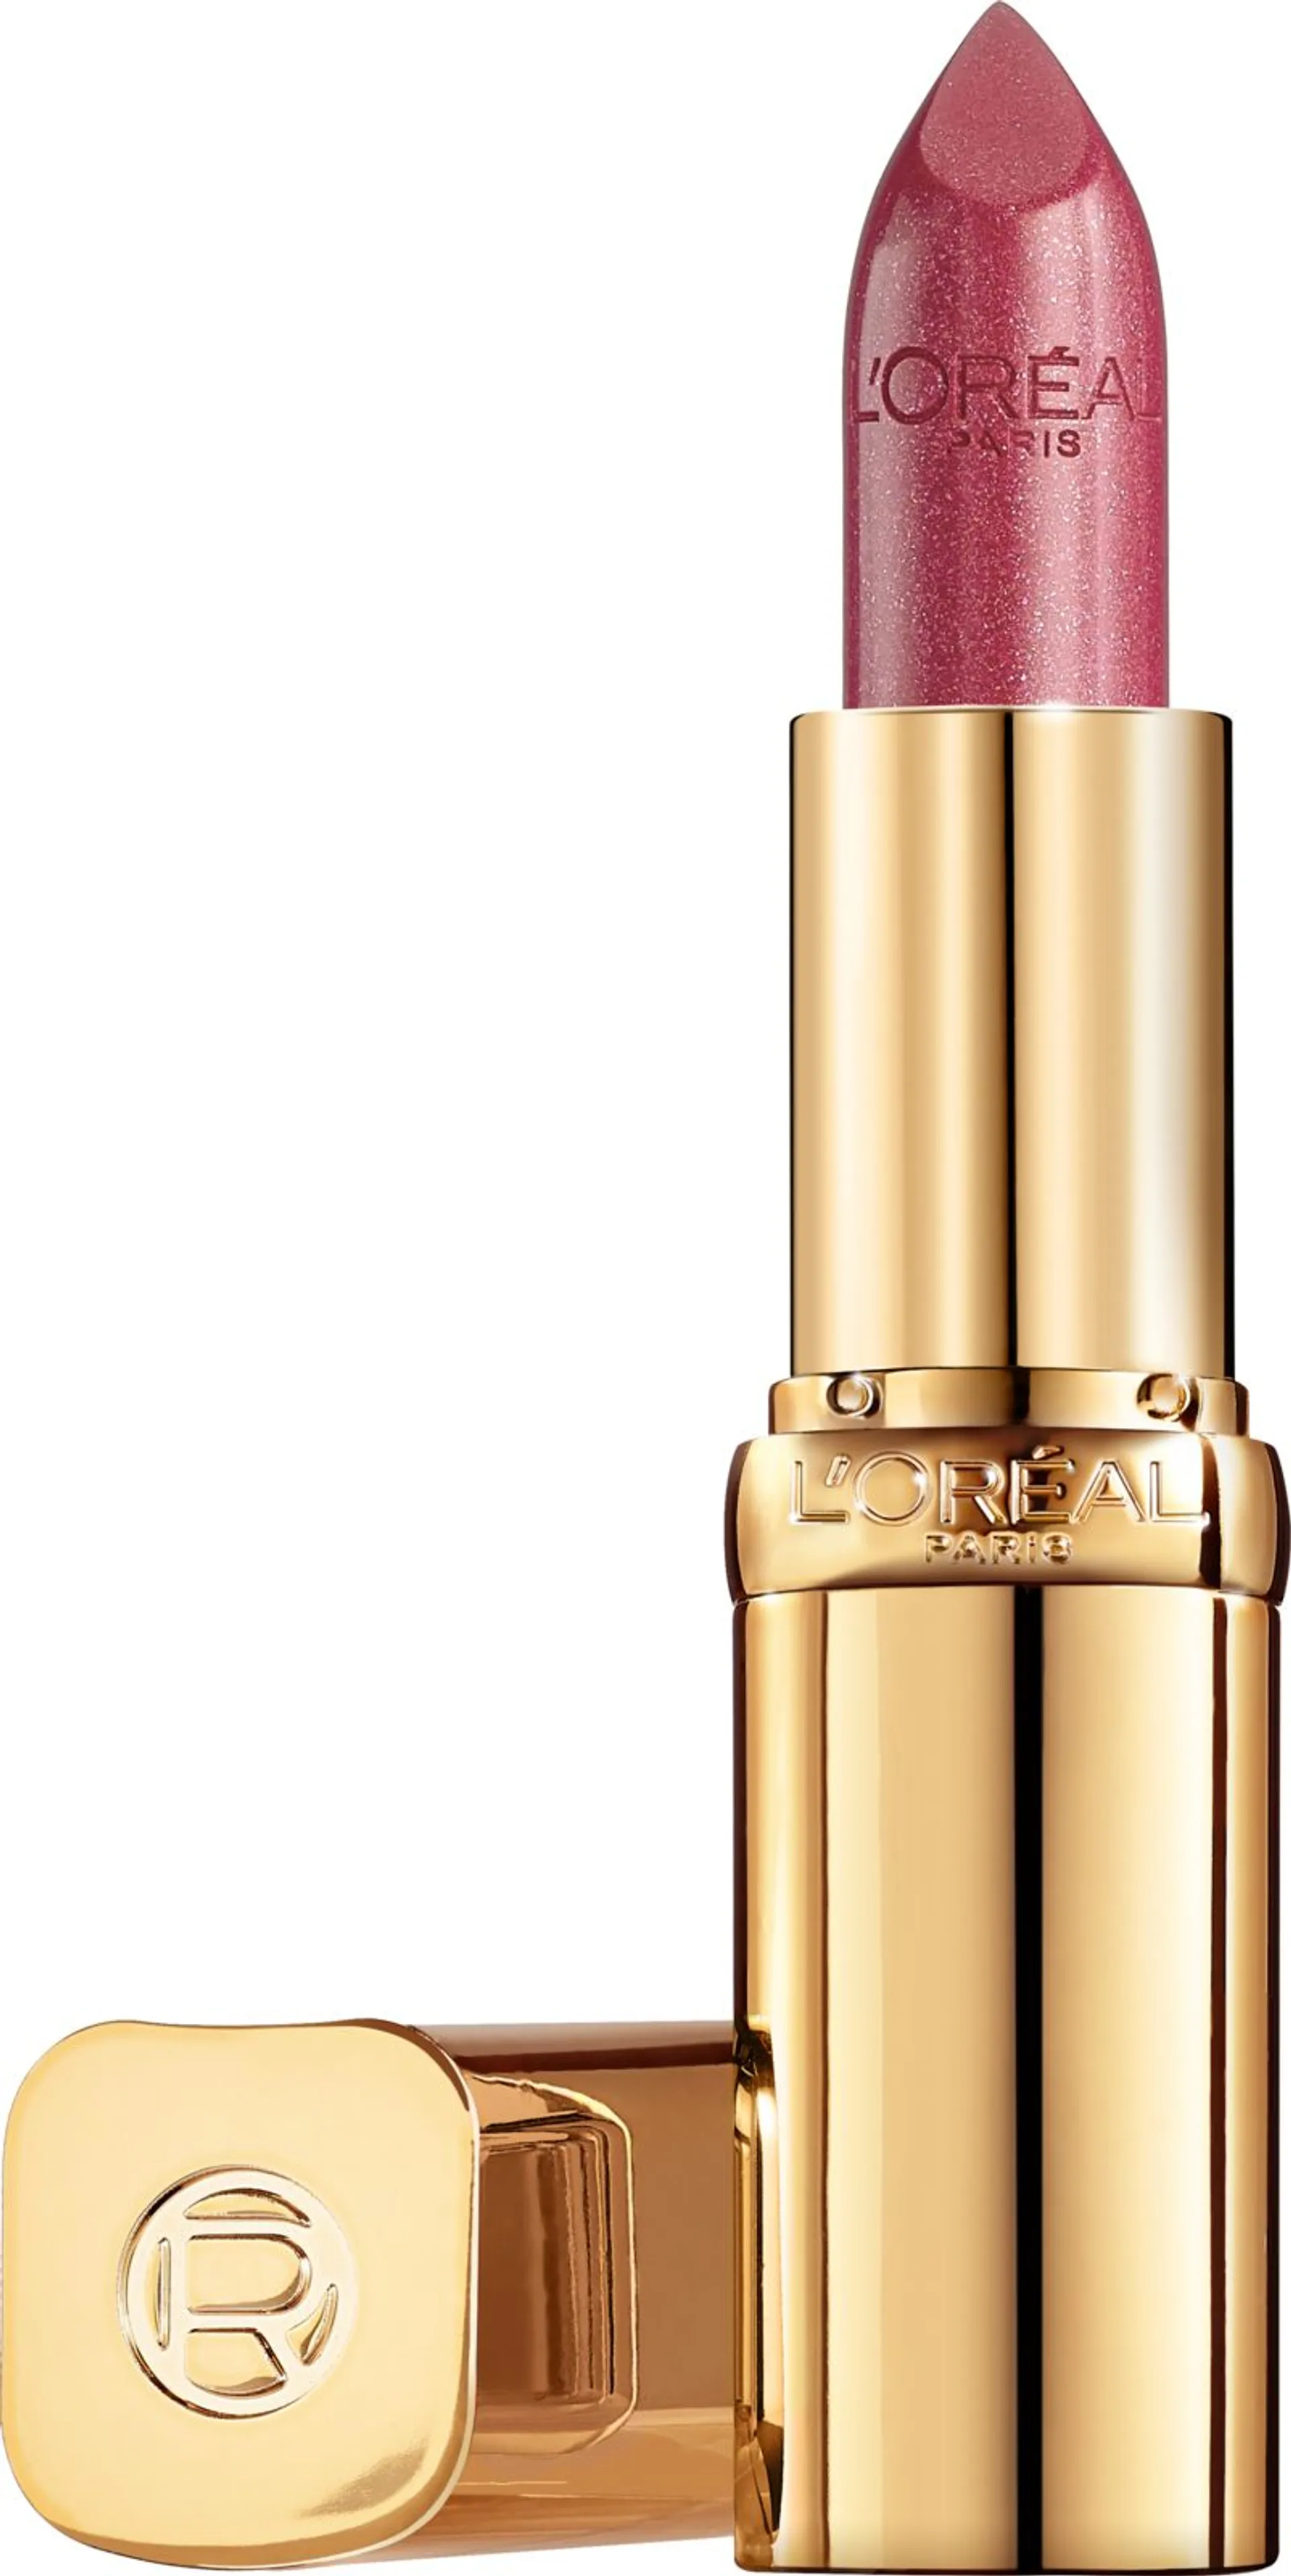 L'Oréal Paris Color Riche Satin 258 Berry Blush huulipuna 4,8 g